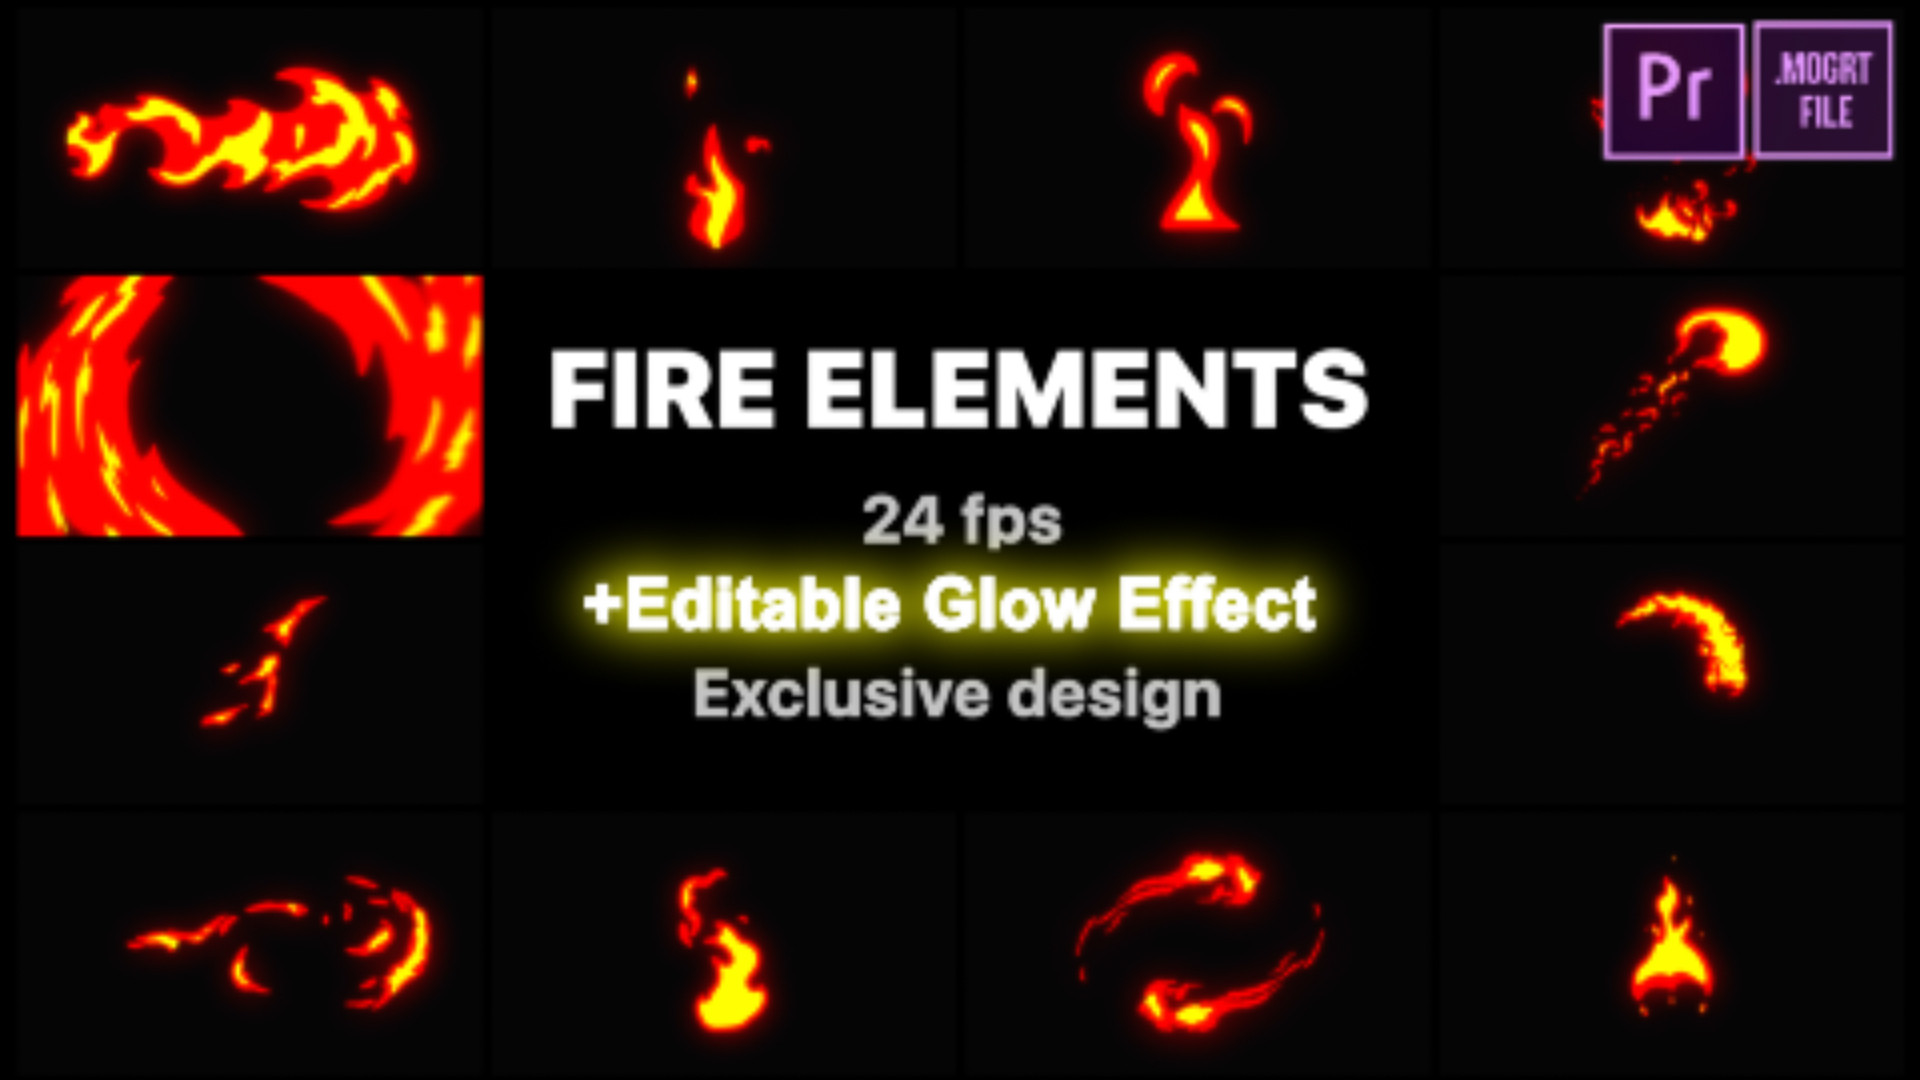 H elements. Element h1 Flash. Bazi expand Fire element.